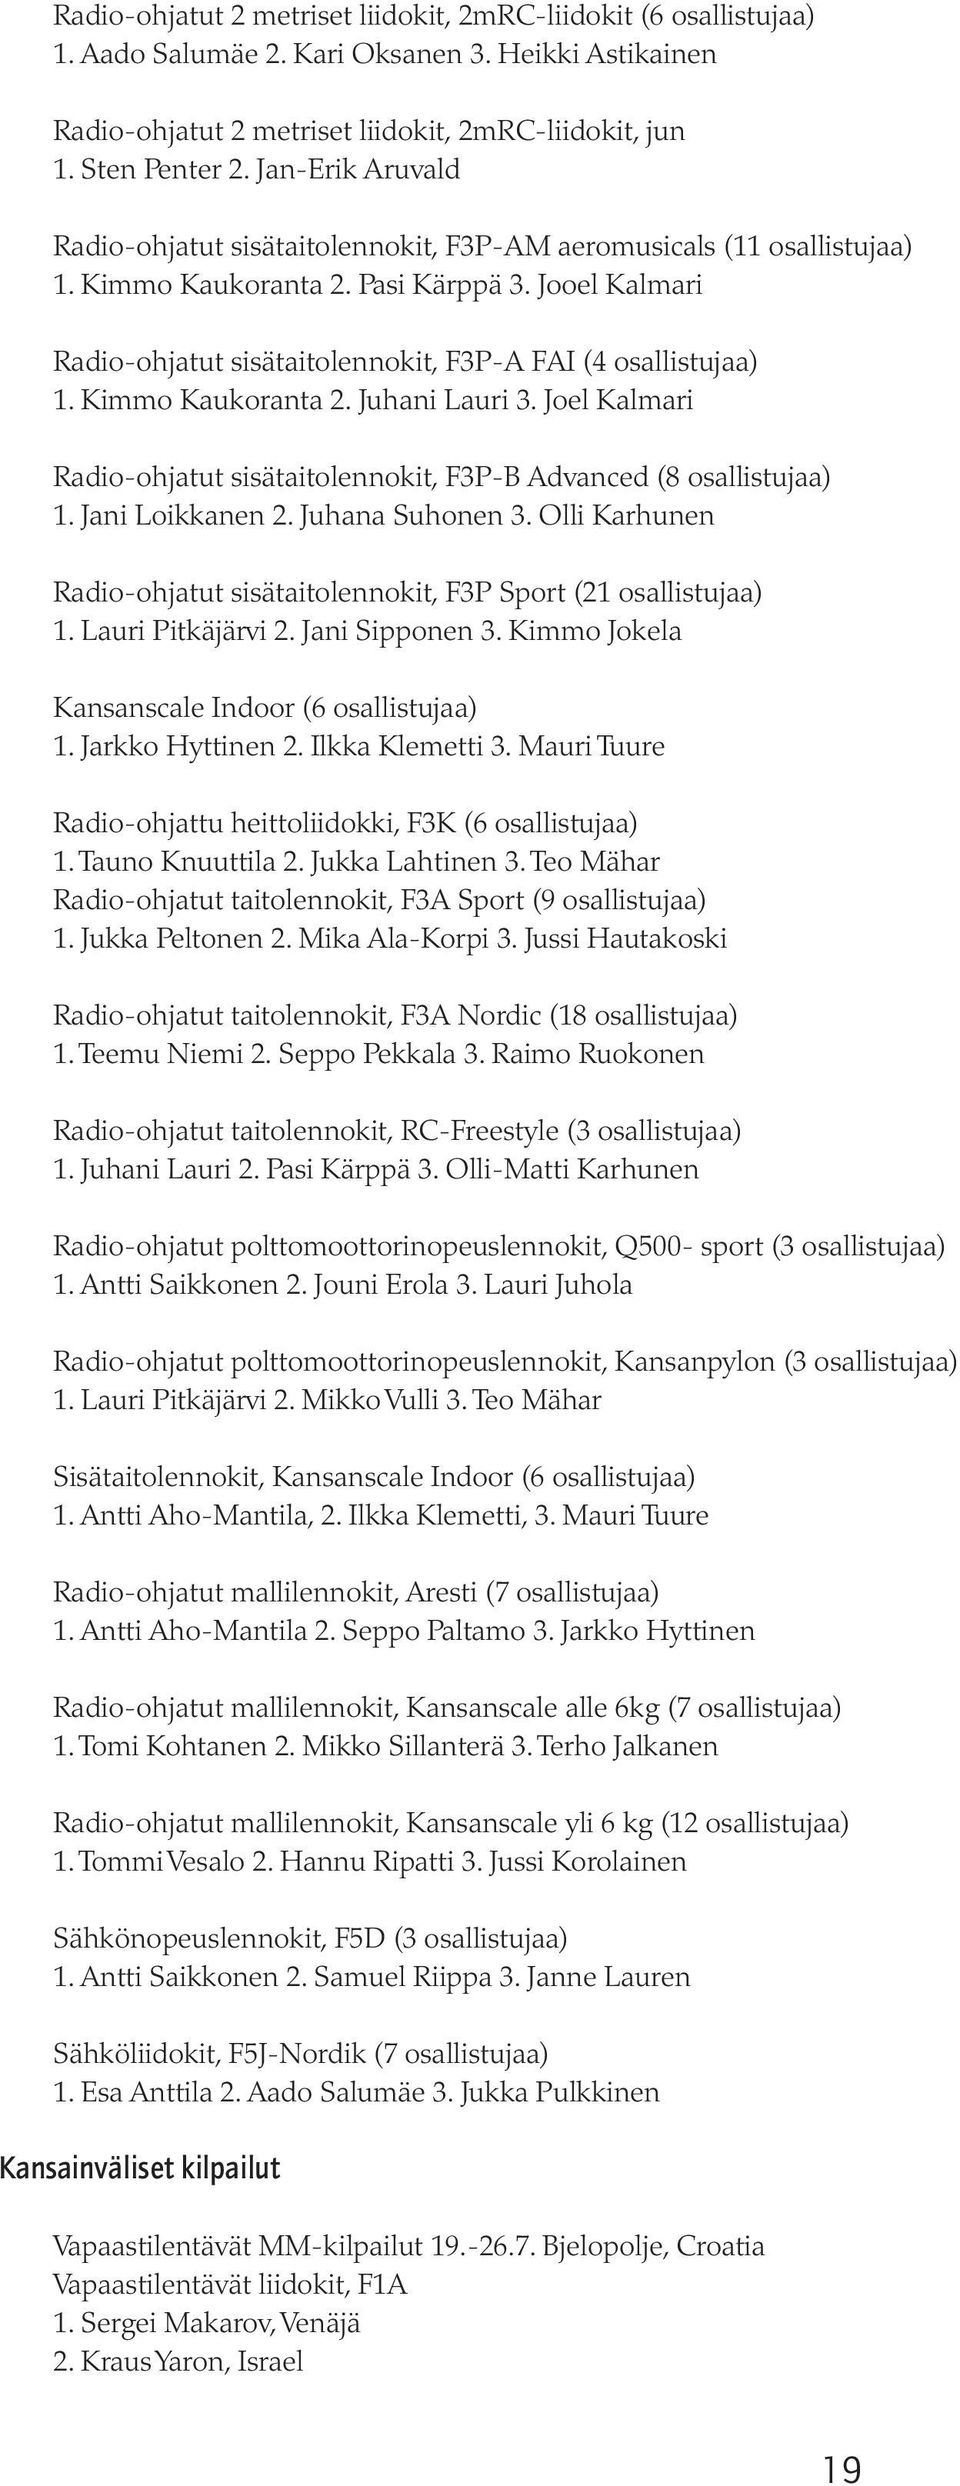 Jooel Kalmari Radio-ohjatut sisätaitolennokit, F3P-A FAI (4 osallistujaa) 1. Kimmo Kaukoranta 2. Juhani Lauri 3. Joel Kalmari Radio-ohjatut sisätaitolennokit, F3P-B Advanced (8 osallistujaa) 1.